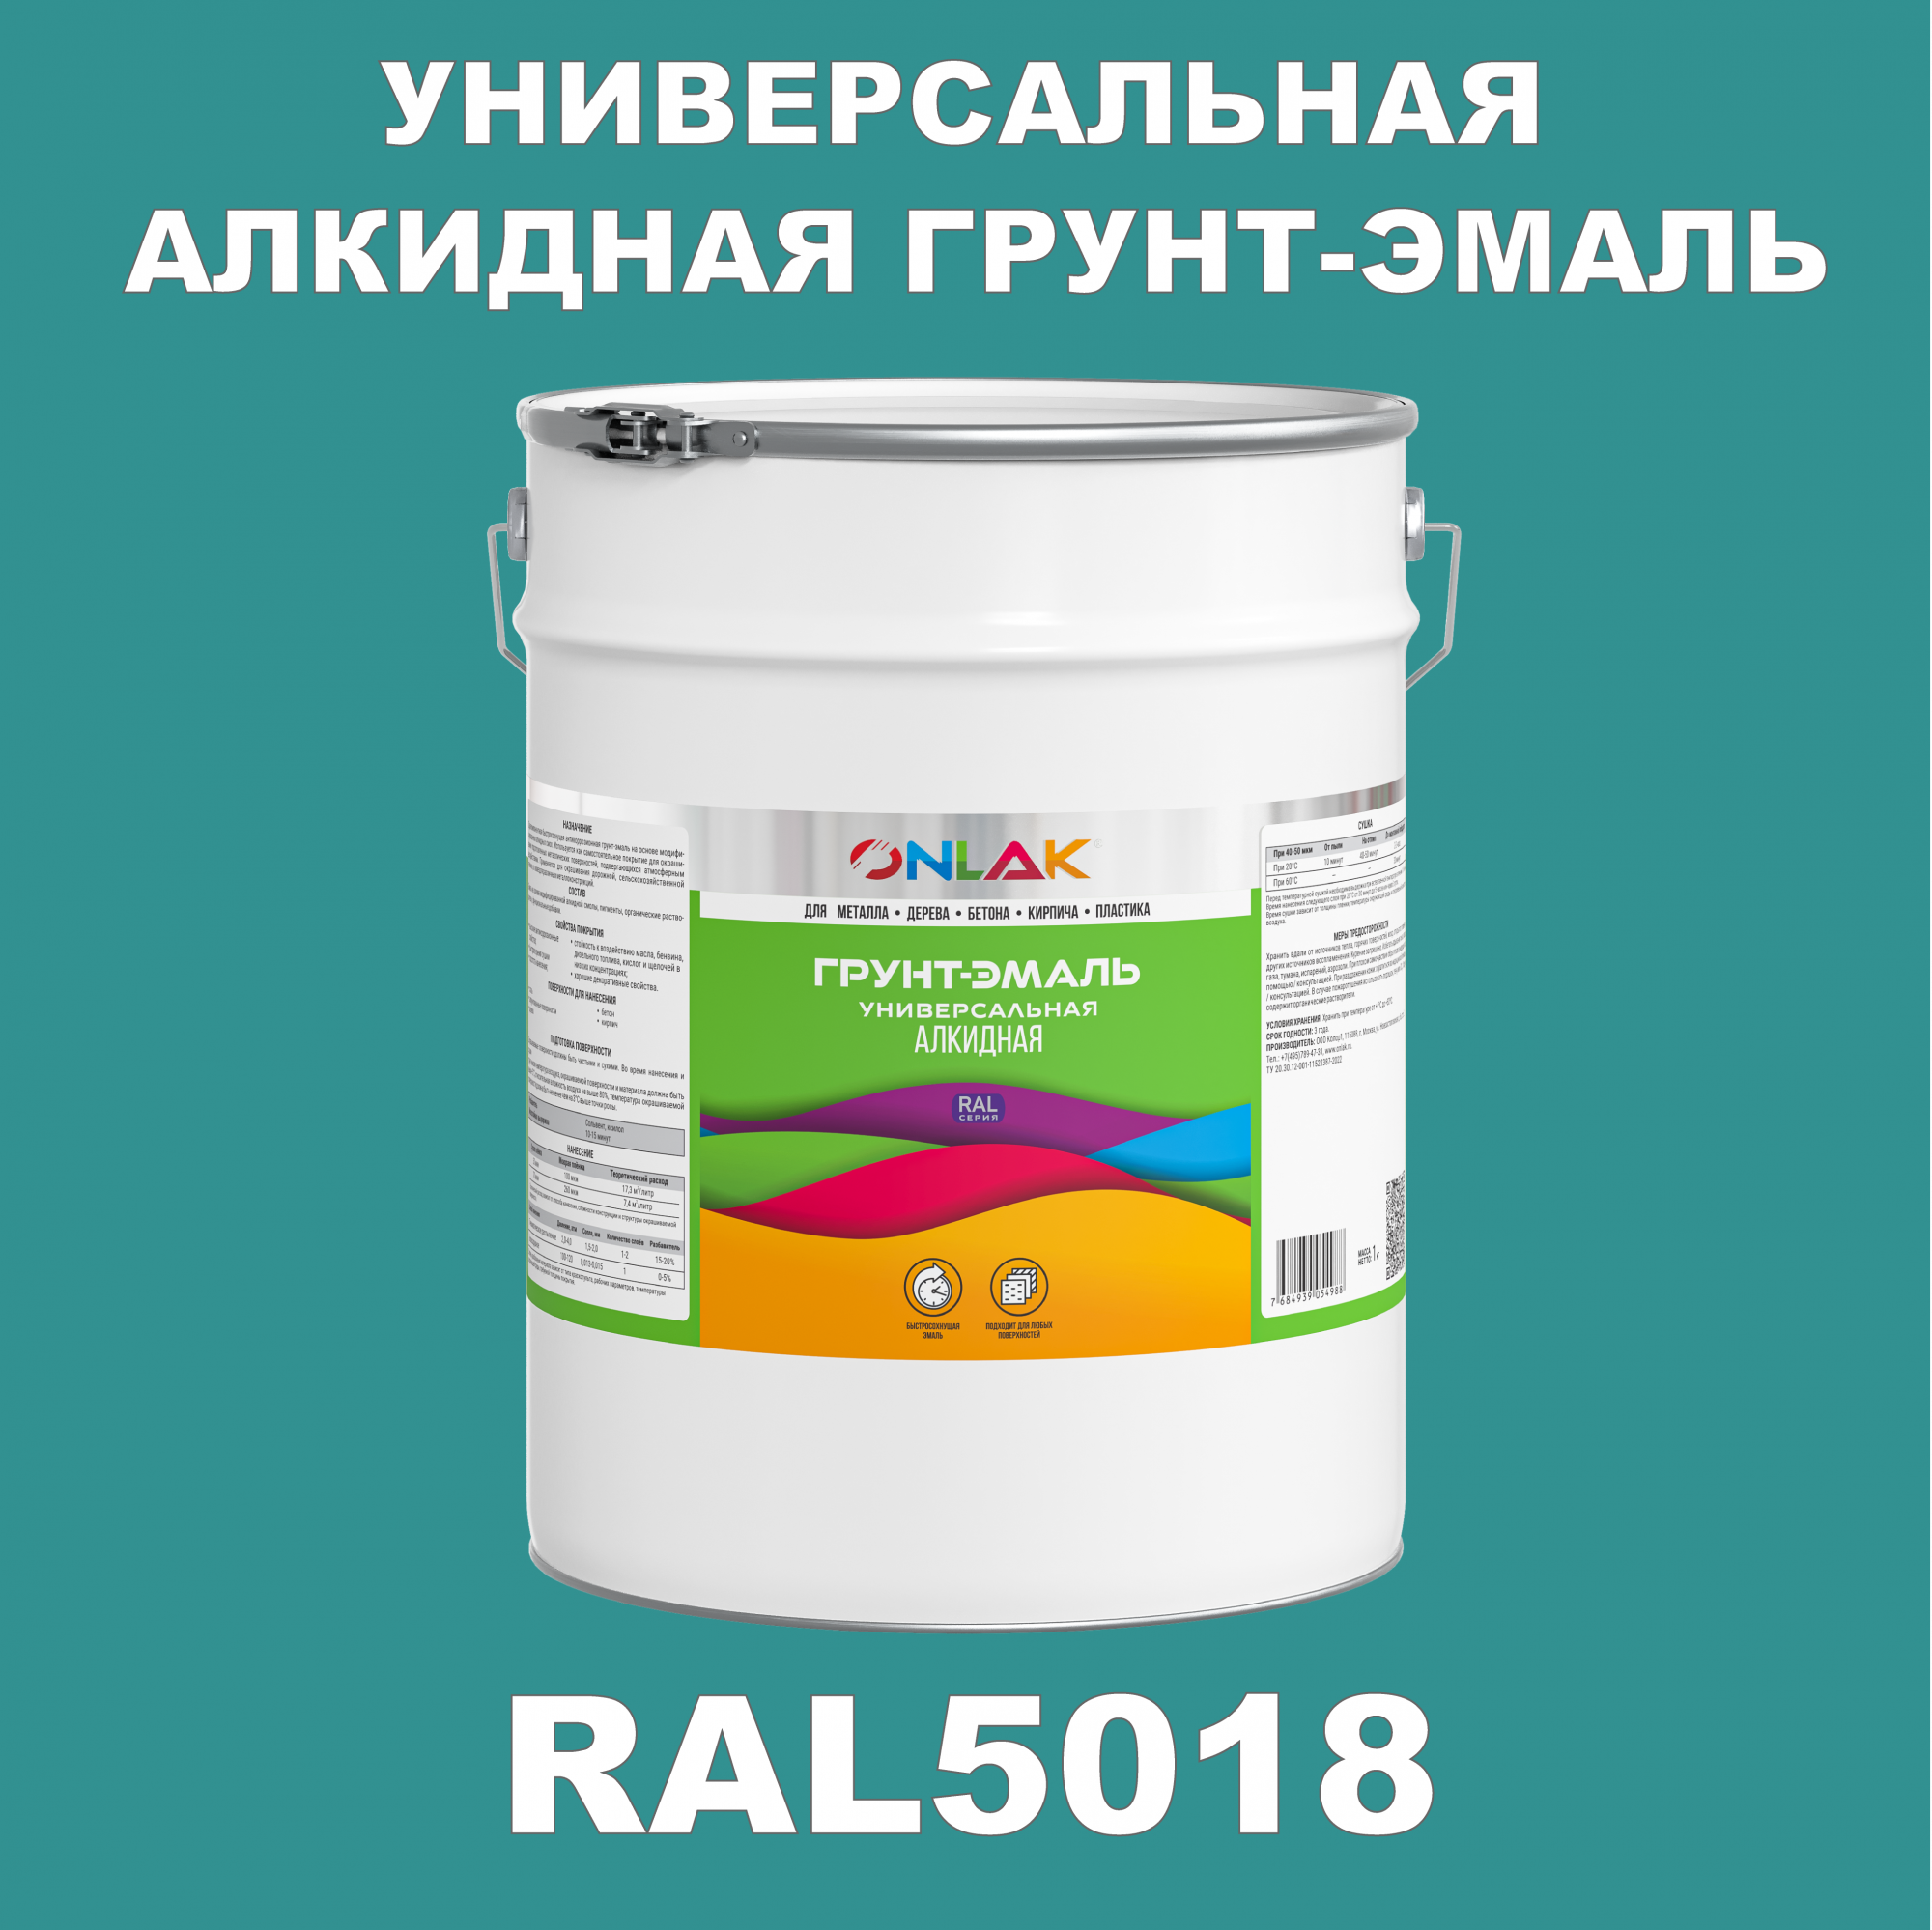 Грунт-эмаль ONLAK 1К RAL5018 антикоррозионная алкидная по металлу по ржавчине 20 кг грунт эмаль skladno по ржавчине алкидная желтая 1 8 кг